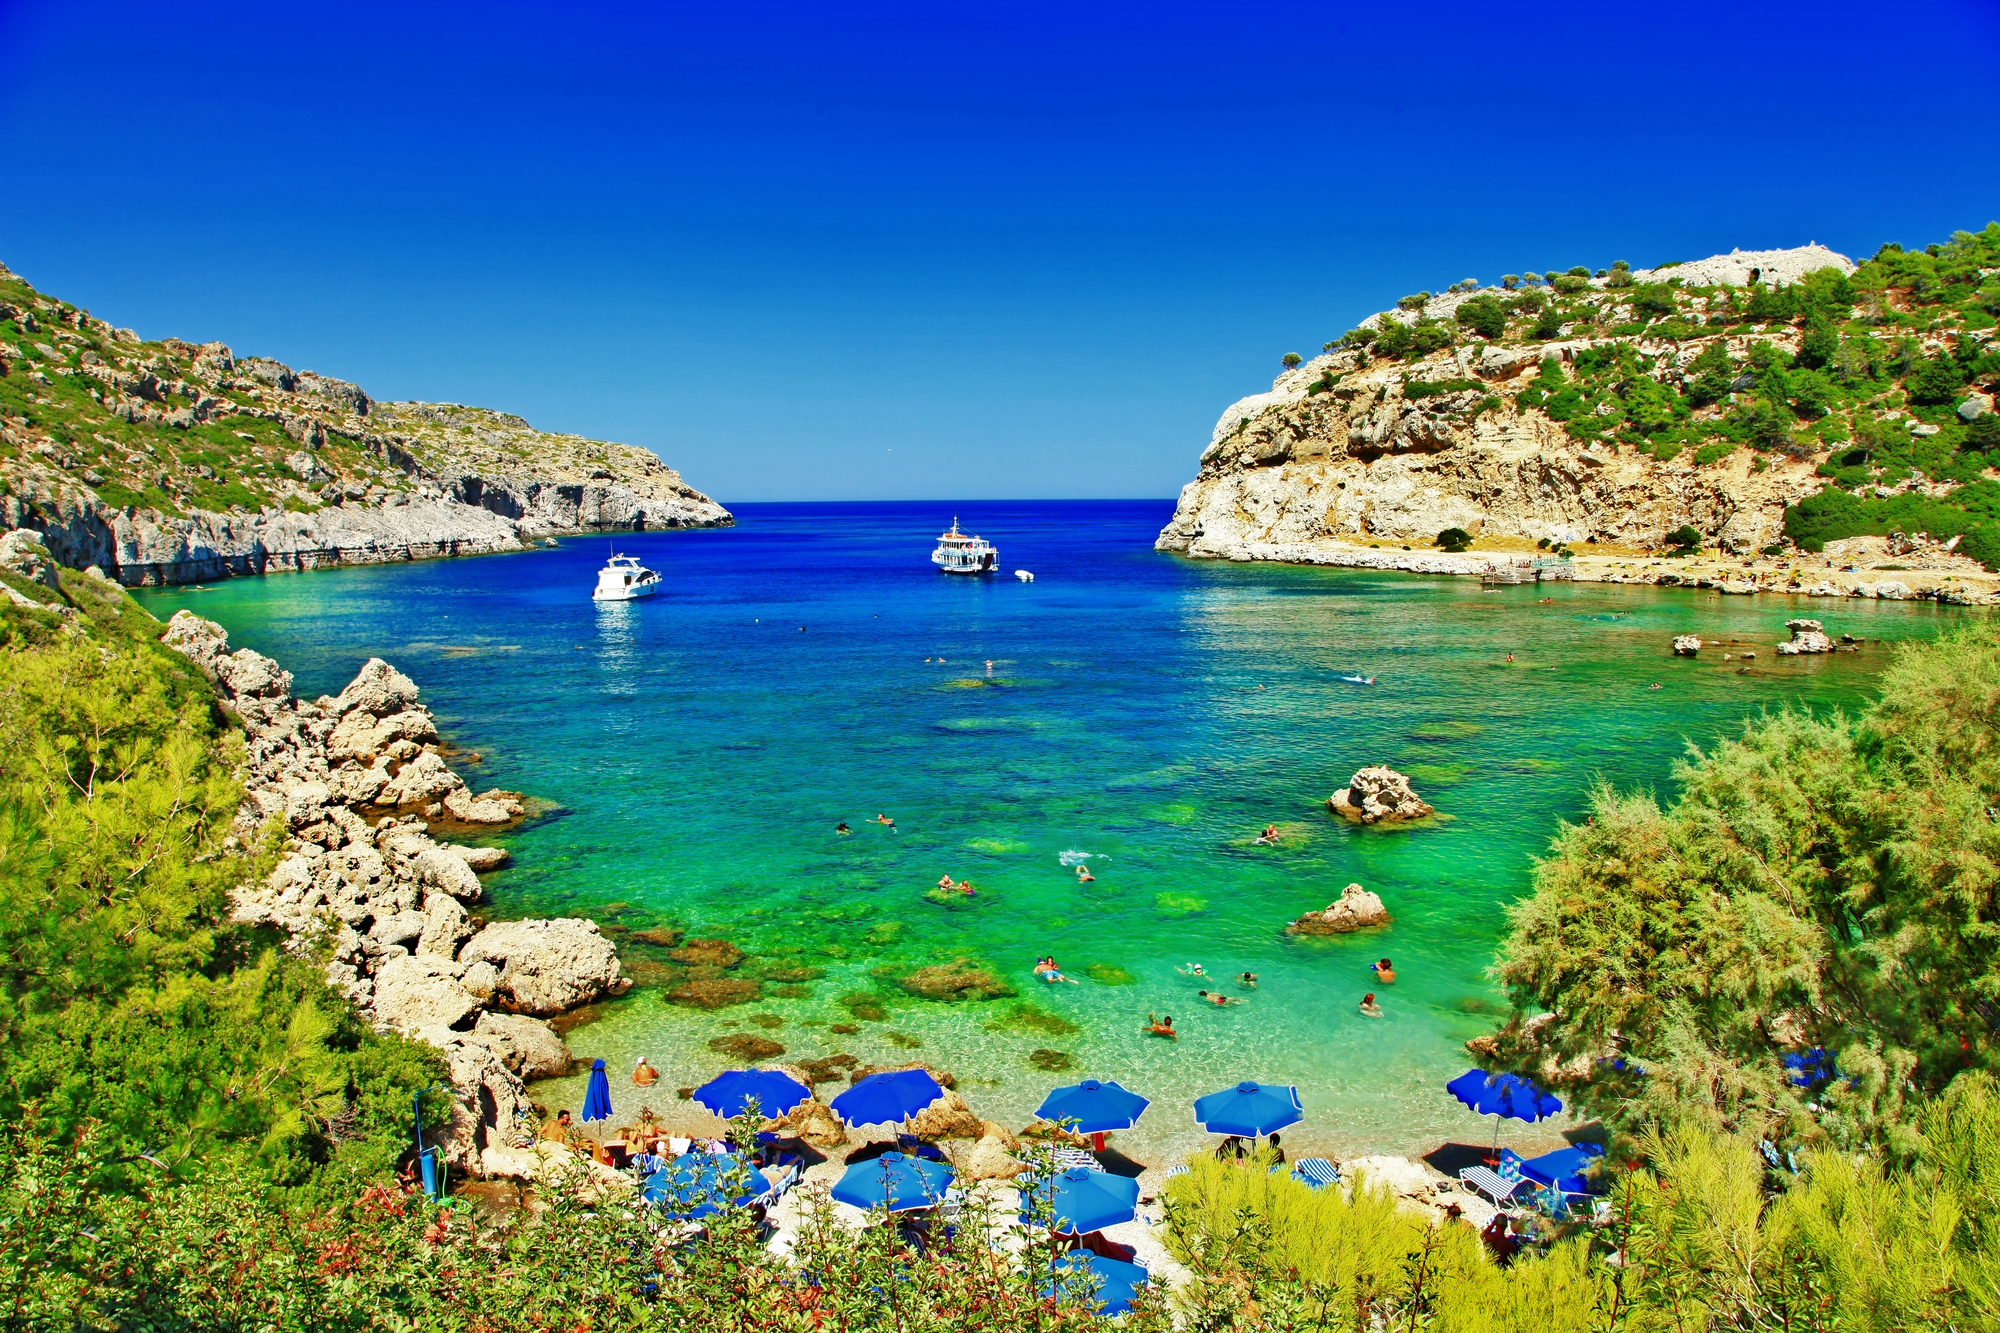 Les magnifiques plages grecques (Rhodes) ouvertes dès ce lundi 19 avril à certaines catégories de touristes /crédit DEpositPhoto